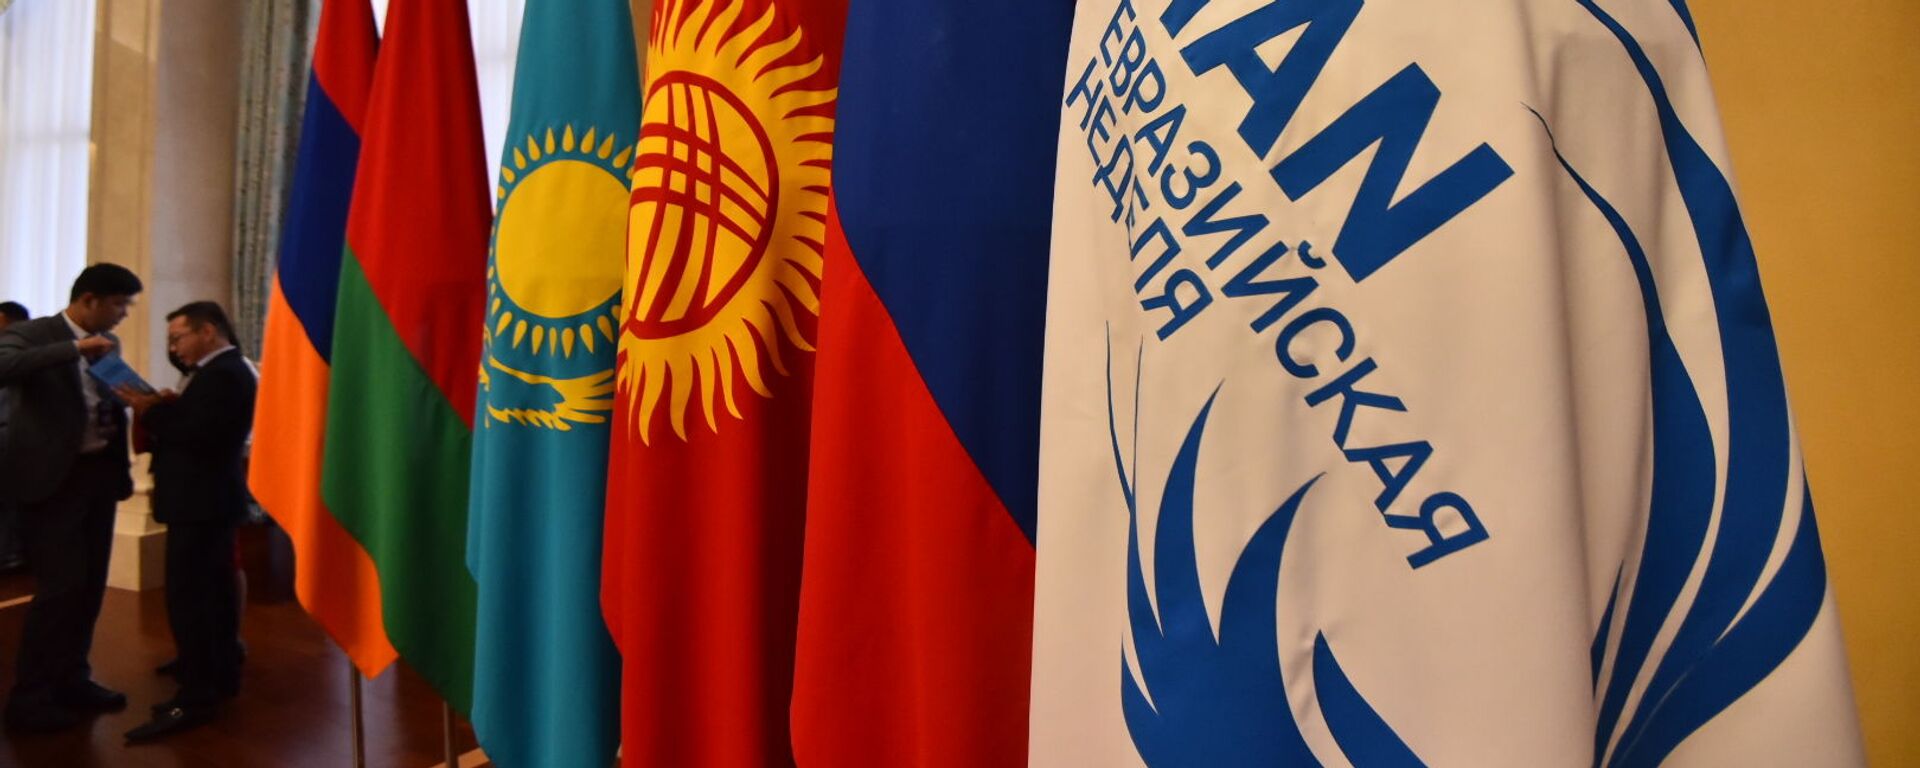 Флаги стран ЕАЭС в госрезиденции Ала-Арча. Архивное фото - Sputnik Кыргызстан, 1920, 24.05.2022